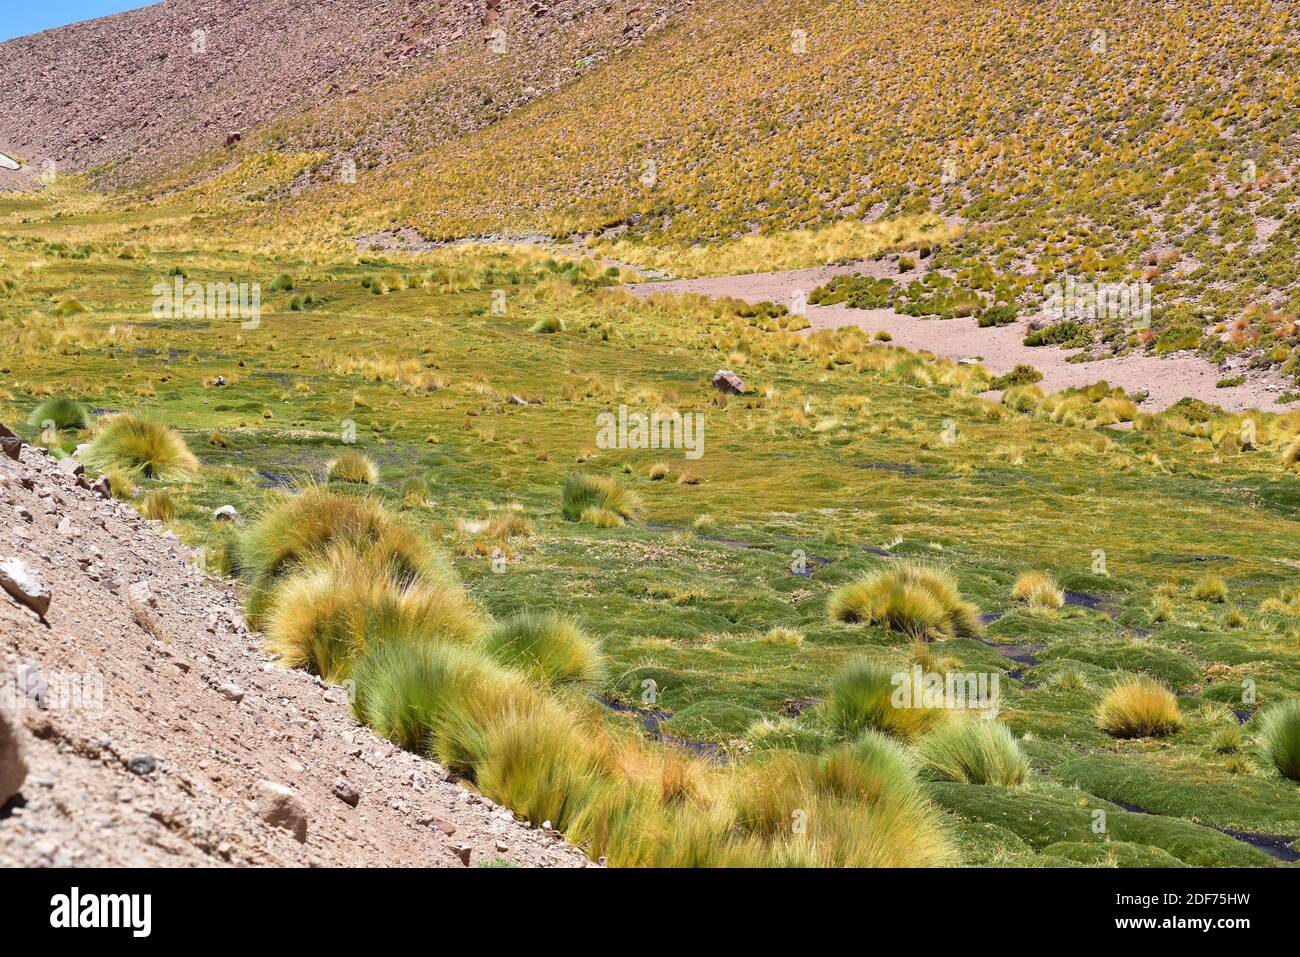 Bofedal ist eine Art Feuchtgebiet in Bolivien, Chile und Peru Anden. Dieses Ökosystem wird von Juncaceae-Pflanzen wie Distichia muscoides und dominiert Stockfoto